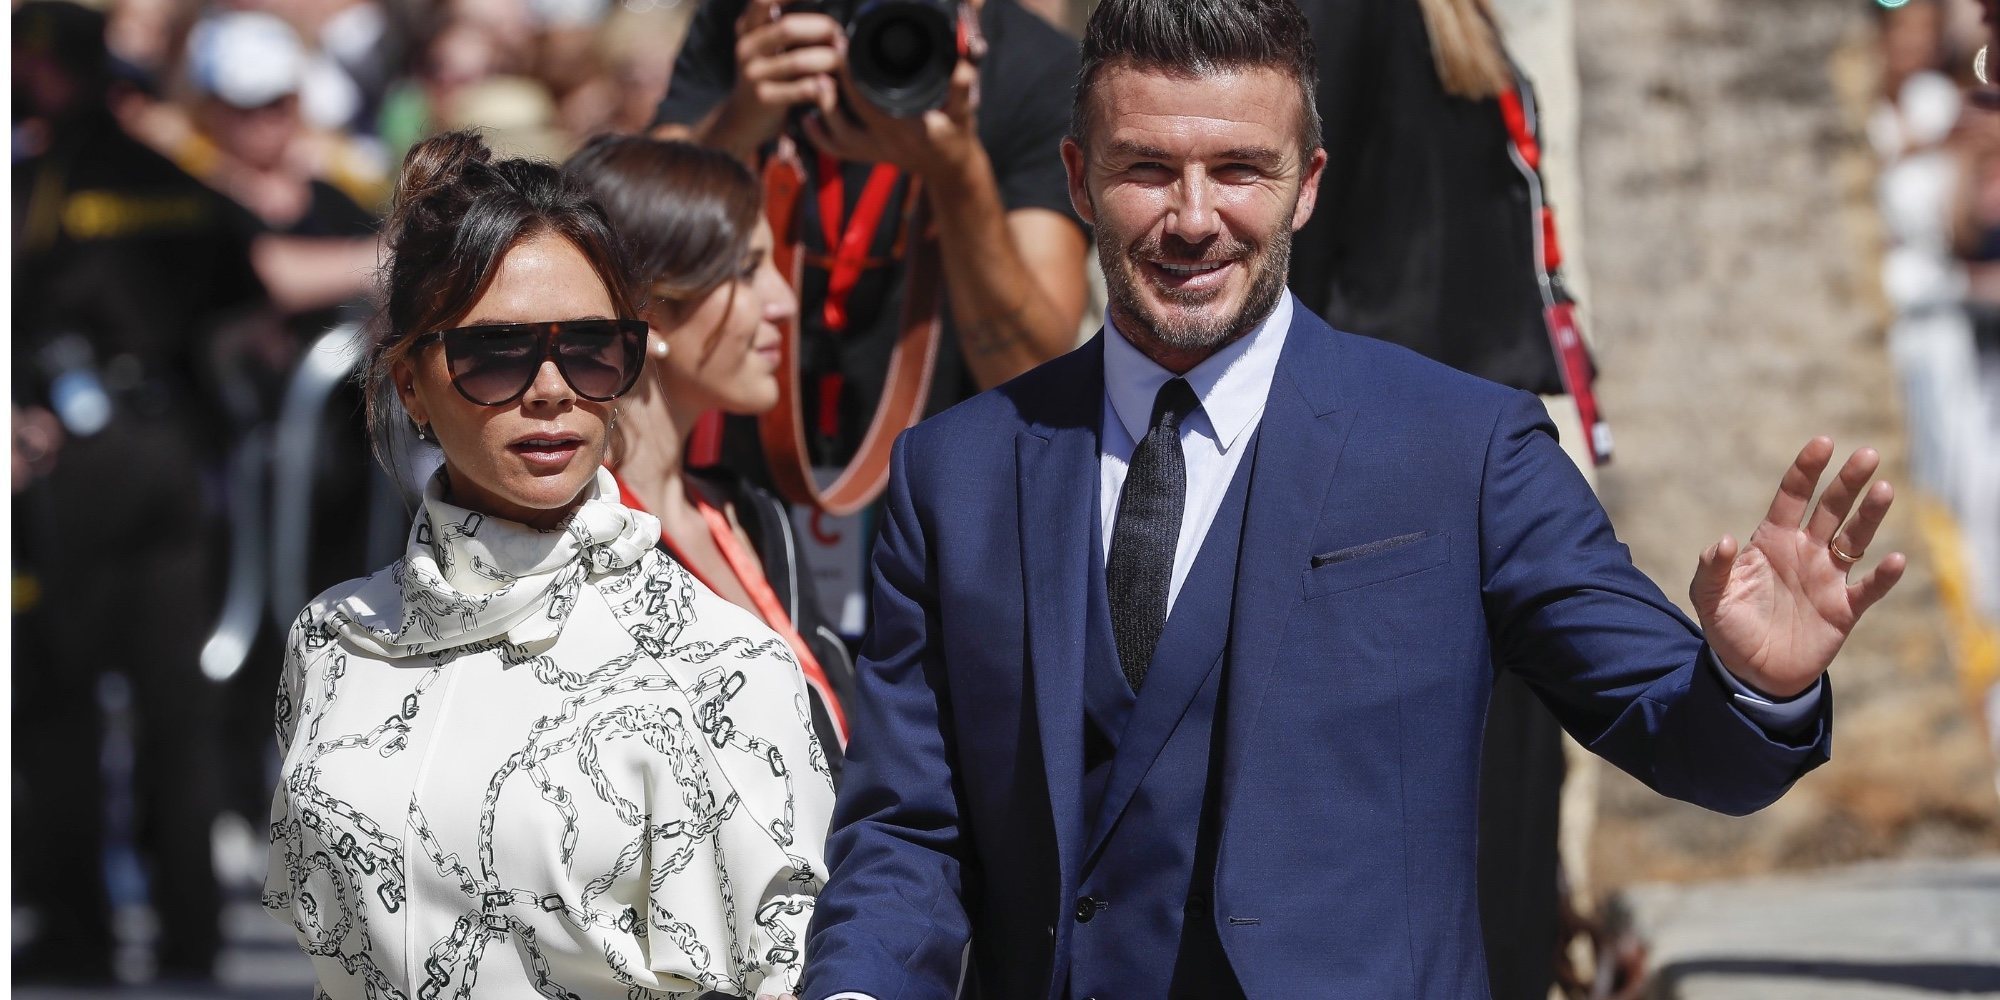 El conflicto de Victoria Beckham con el padre de David Beckham por lista de invitados al bautizo de sus hijos